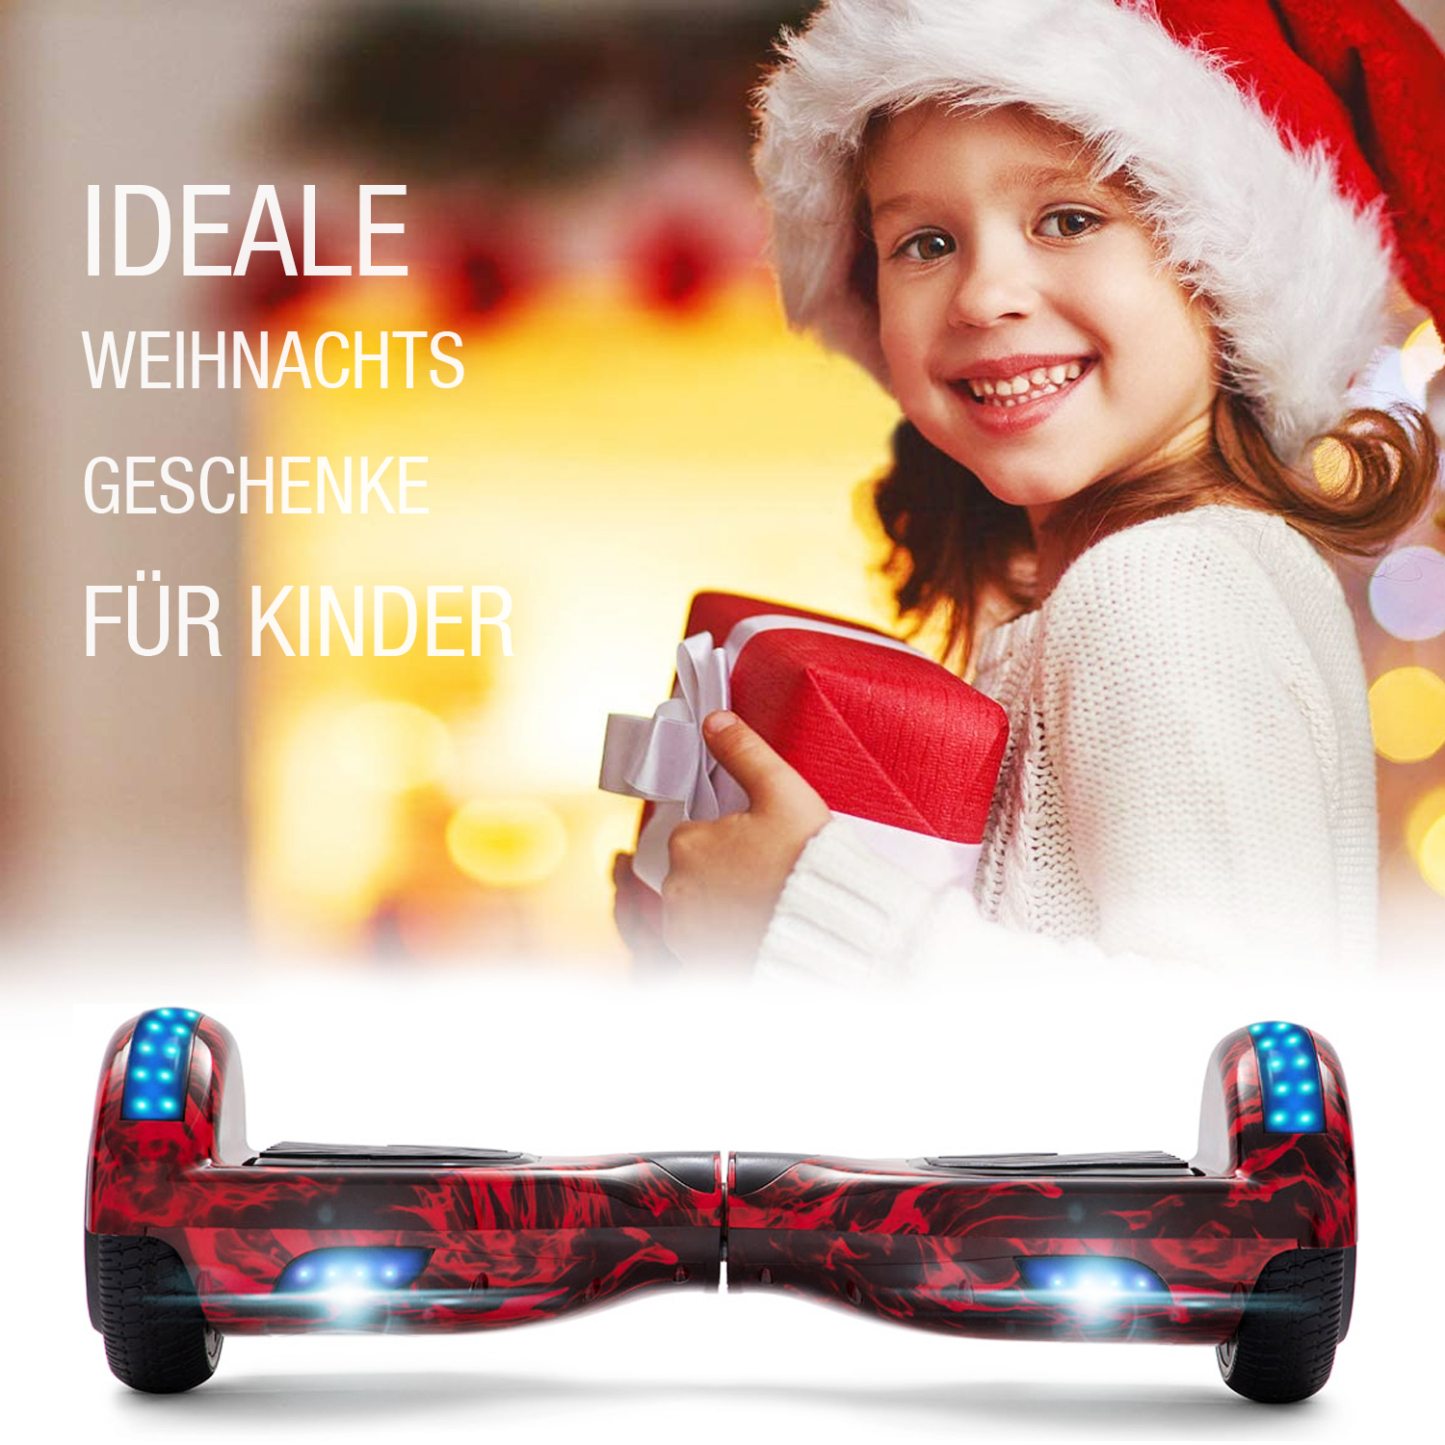 Neues 6,5" rote Flamme Hoverboard für Kinder, mit Bluetooth Musik Lautsprecher und Disco LED Licht - 500W 12km/h